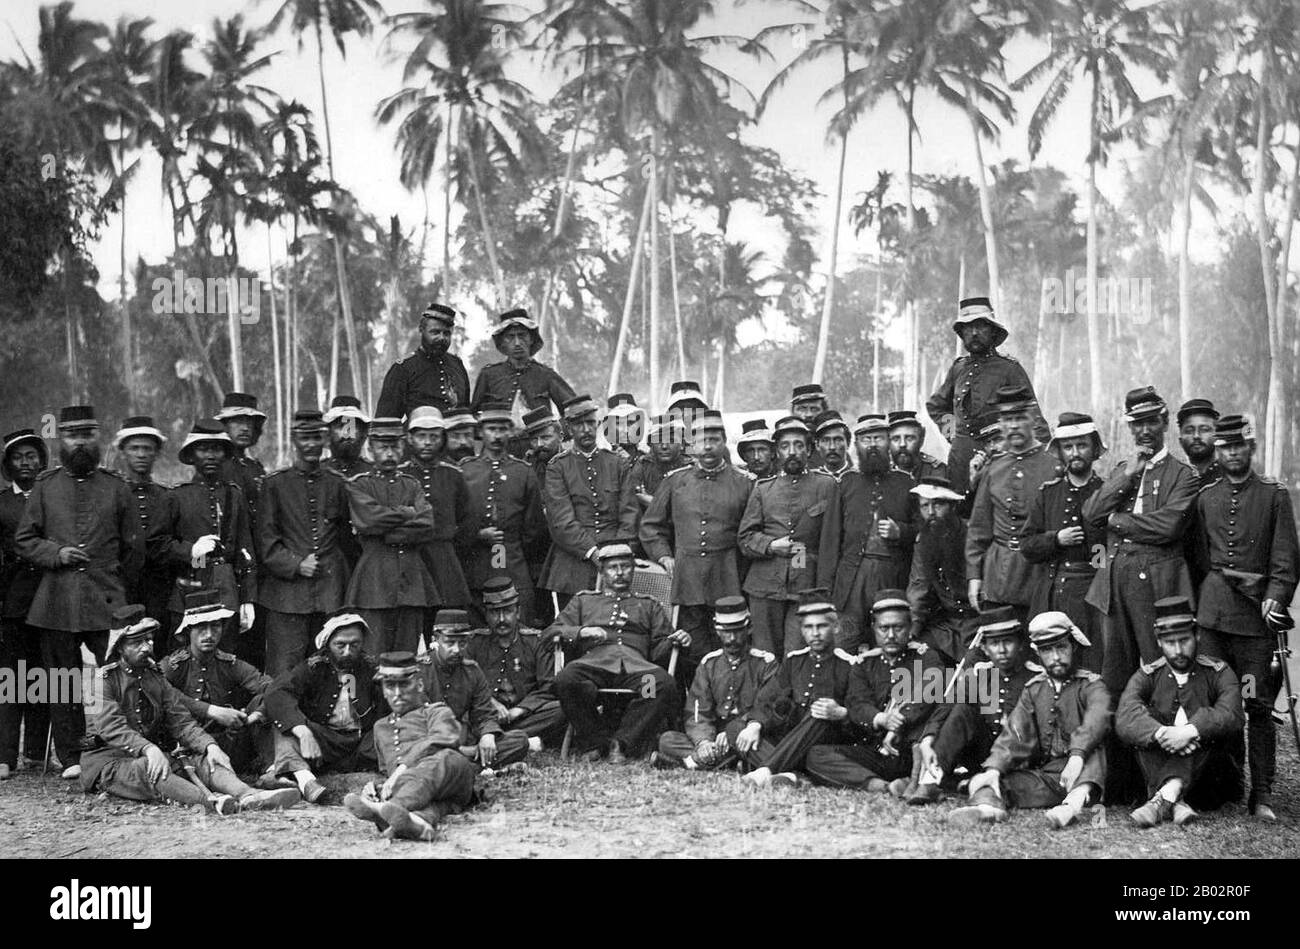 Der Aceh-Krieg, auch als holländischer Krieg oder Infidelkrieg (zwischen den Jahren zwischen den Jahren zwischen den Jahren zwischen den Jahren zwischen dem Sultanat Aceh und den Niederlanden bekannt, wurde Anfang des Jahres 1873 durch Gespräche zwischen Vertretern von Aceh und Großbritannien in Singapur ausgelöst. Der Krieg war Teil einer Reihe von Konflikten im späten 19. Jahrhundert, die die niederländische Herrschaft über das moderne Indonesien festigten. Stockfoto